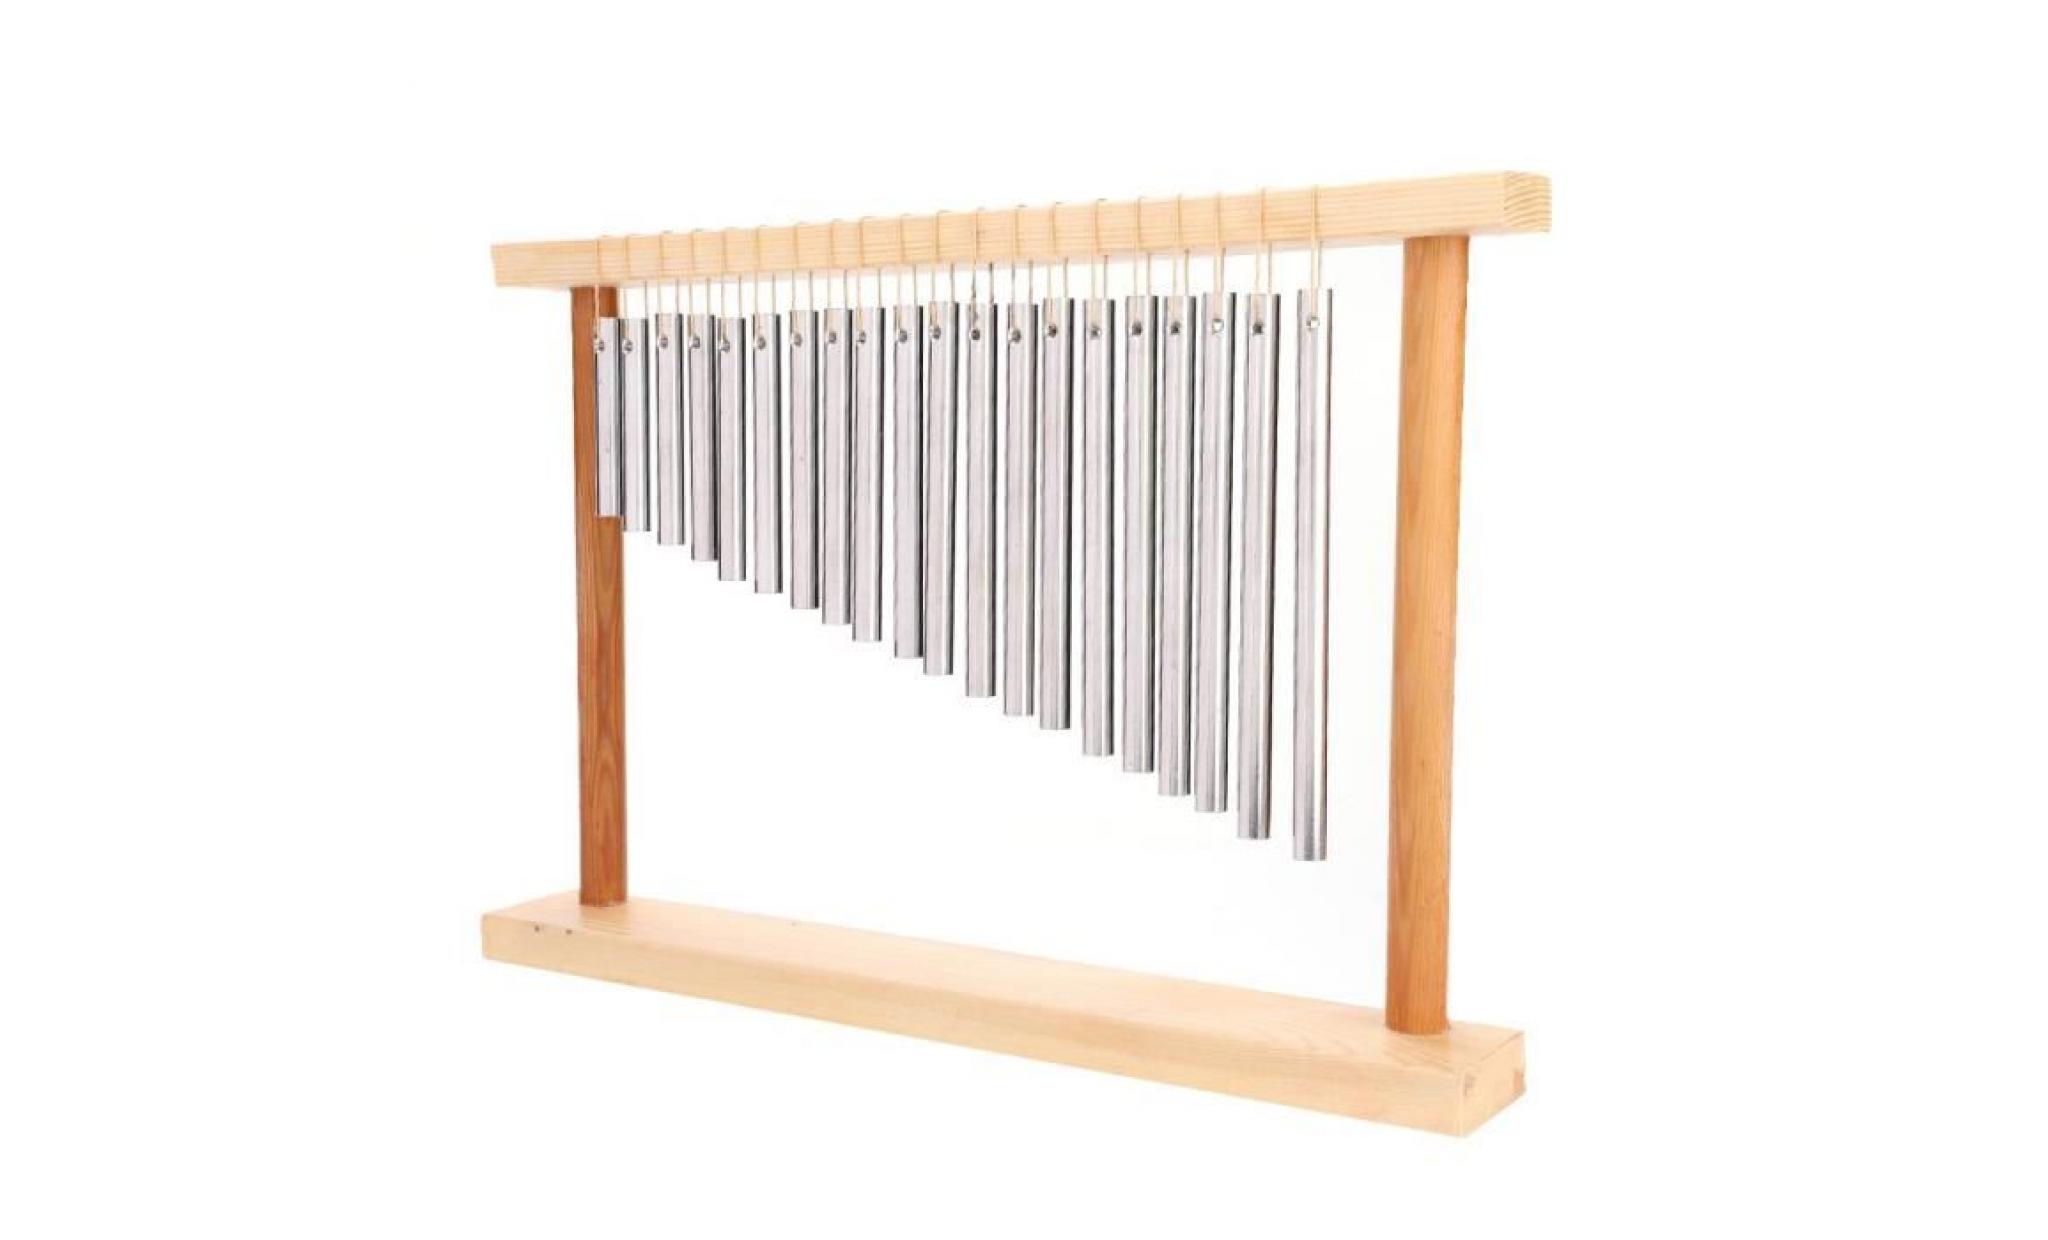 20 barres instrument de percussion musicale carillon de vent cloche tuyau en aluminium solide en bois pas cher